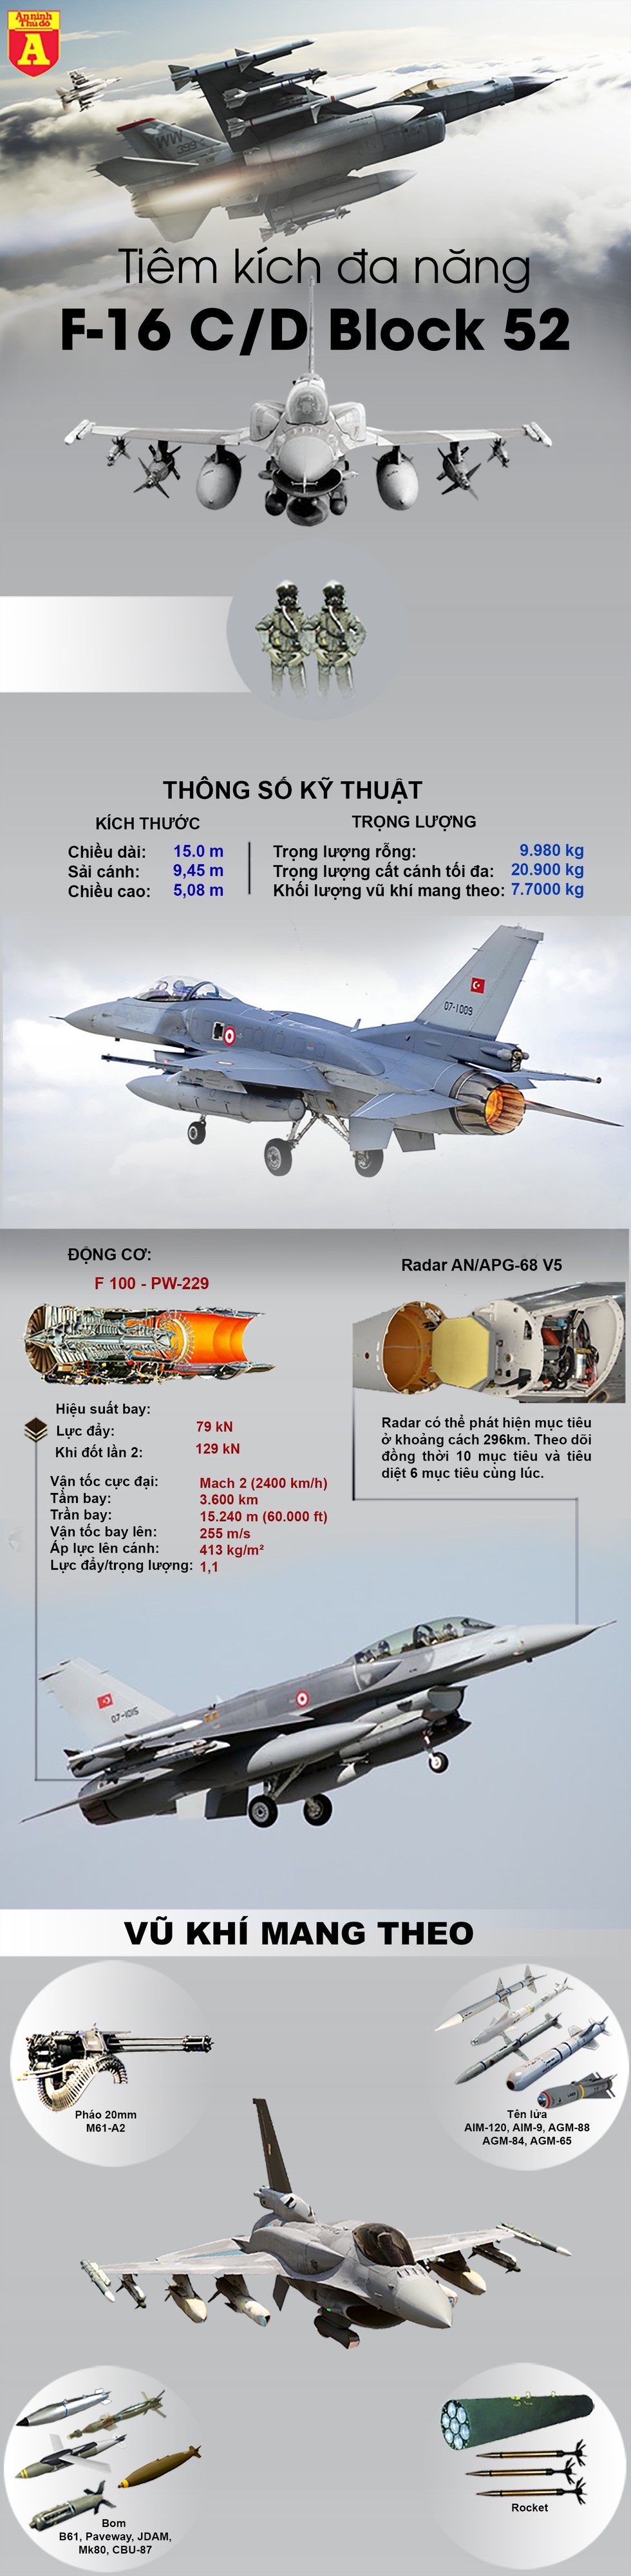 [Infographics] F-16 Thổ Nhĩ Kỳ lao lên không trung, chặn "sát thủ diệt hạm" Tu-22M3 Nga - Ảnh 1